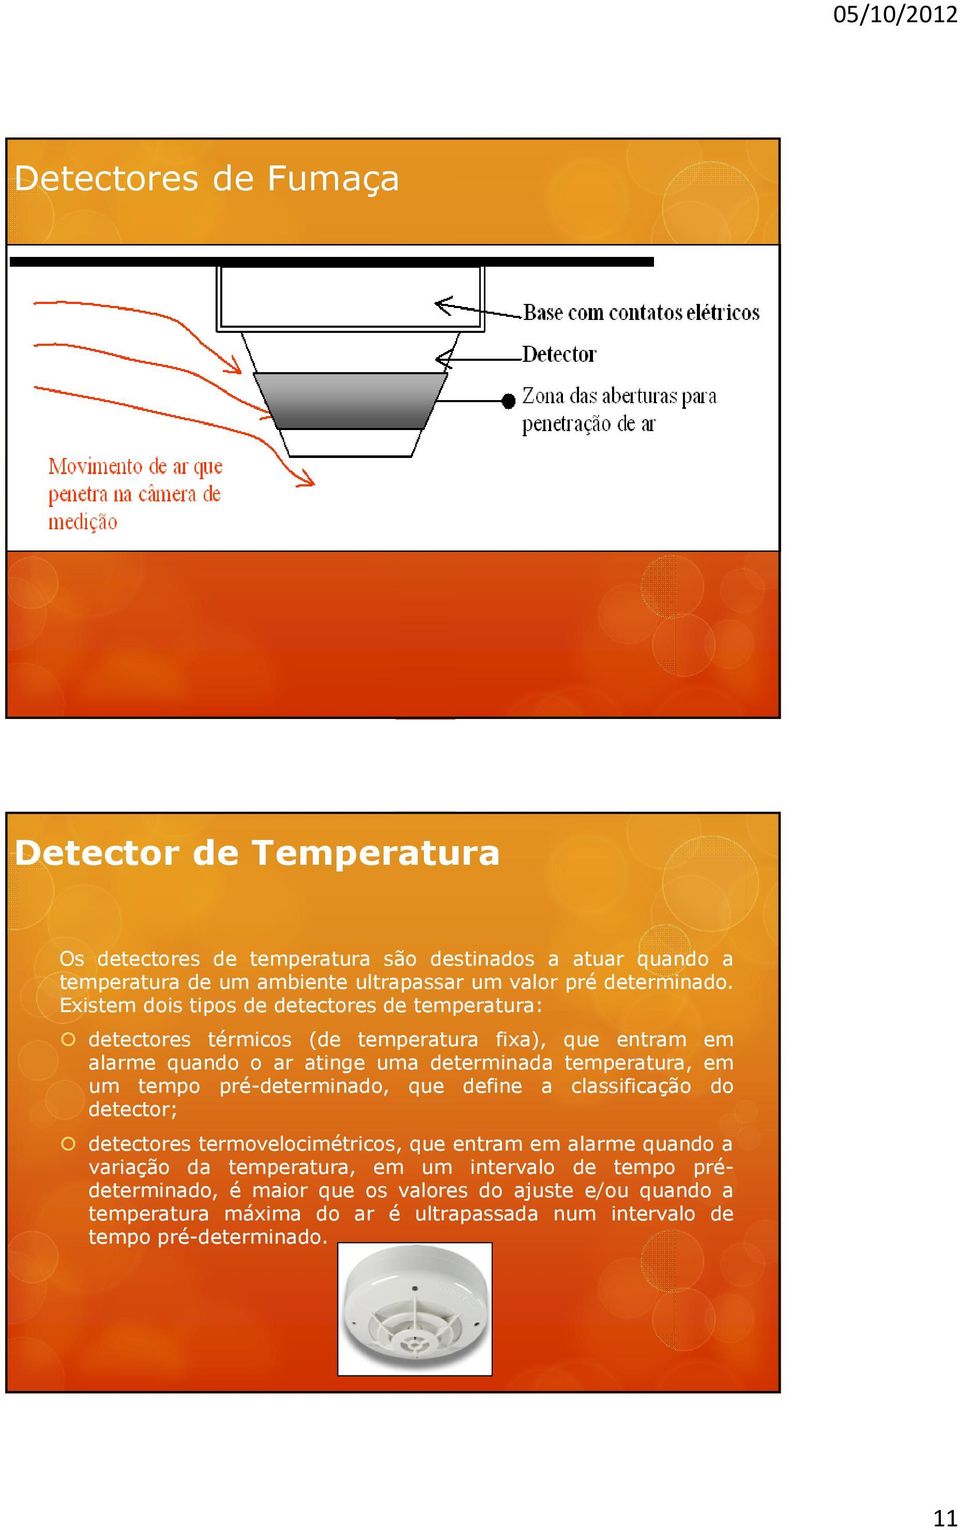 Existem dois tipos de detectores de temperatura: detectores térmicos (de temperatura fixa), que entram em alarme quando o ar atinge uma determinada temperatura, em